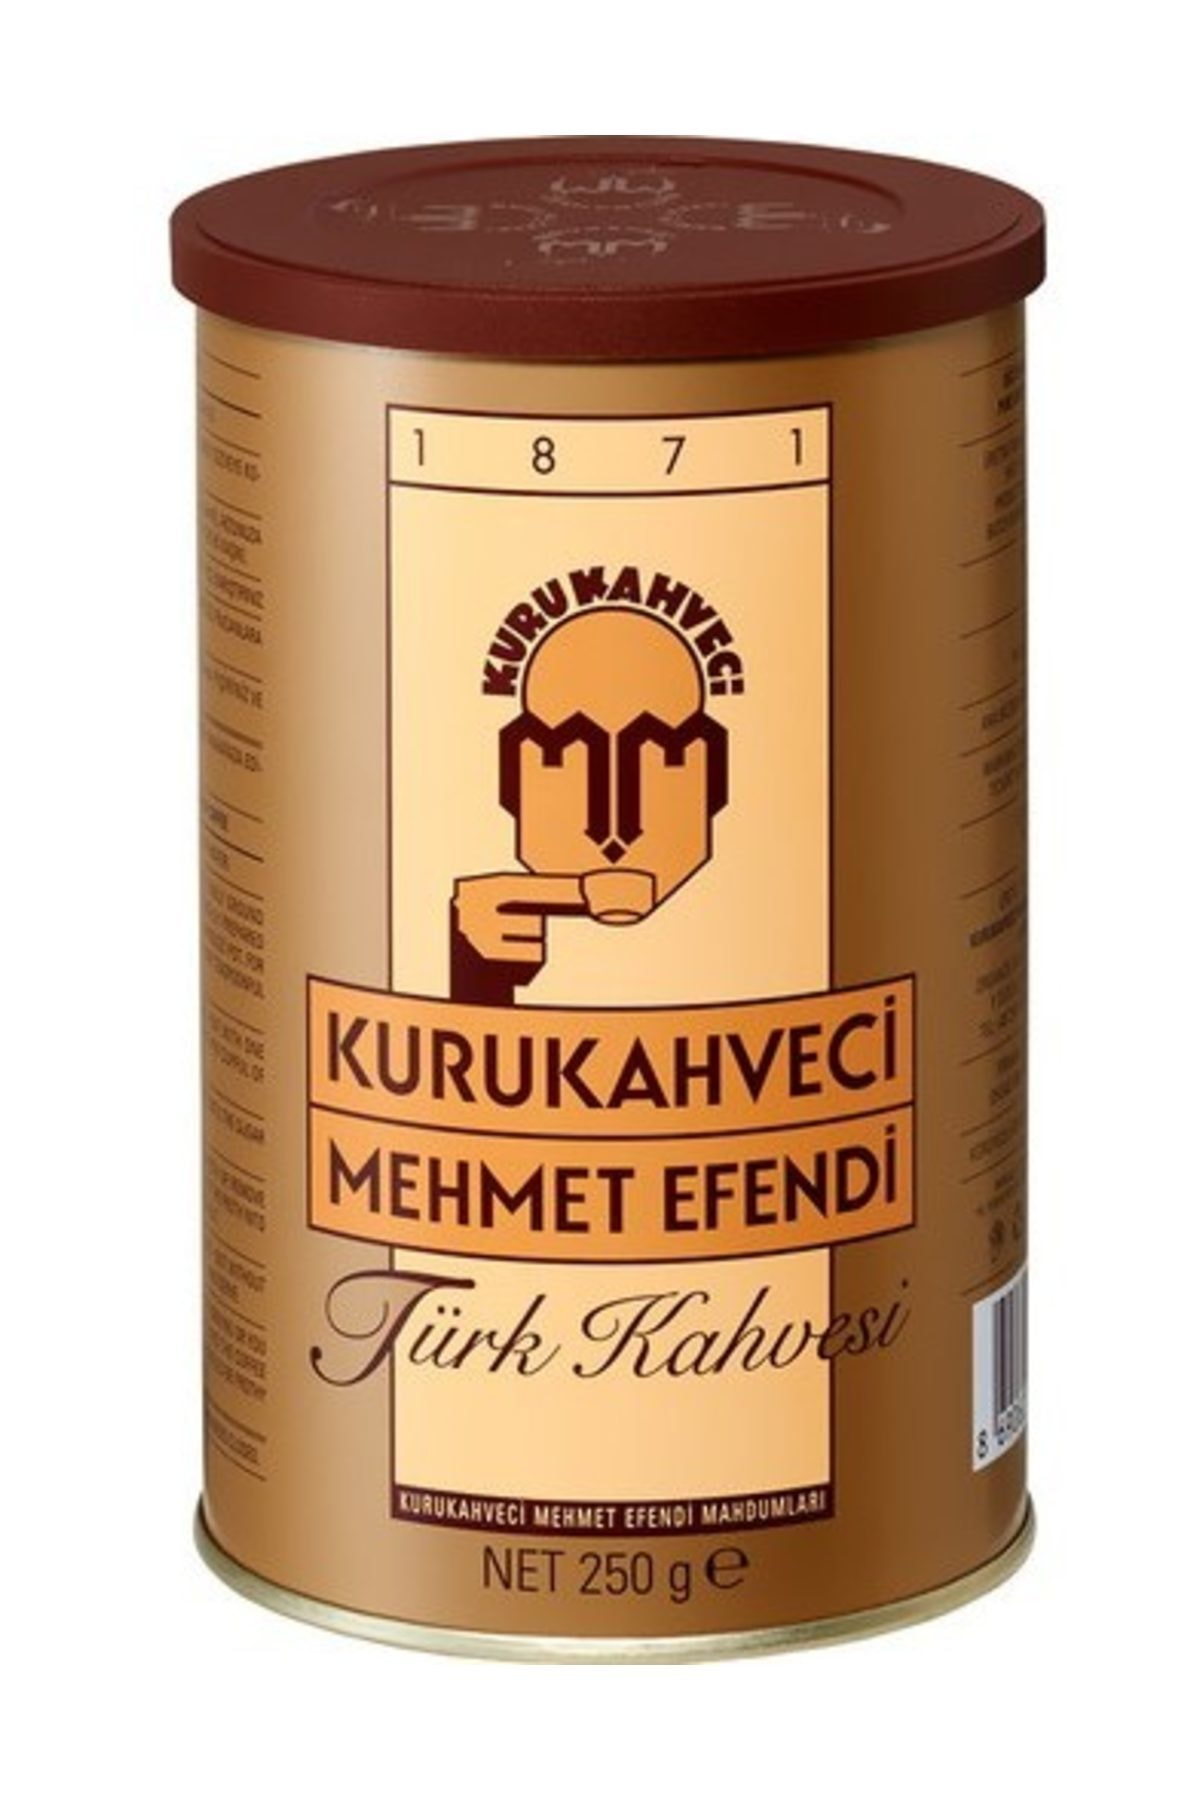 Kurukahveci Mehmet Efendi Türk Kahvesi Teneke 250 G